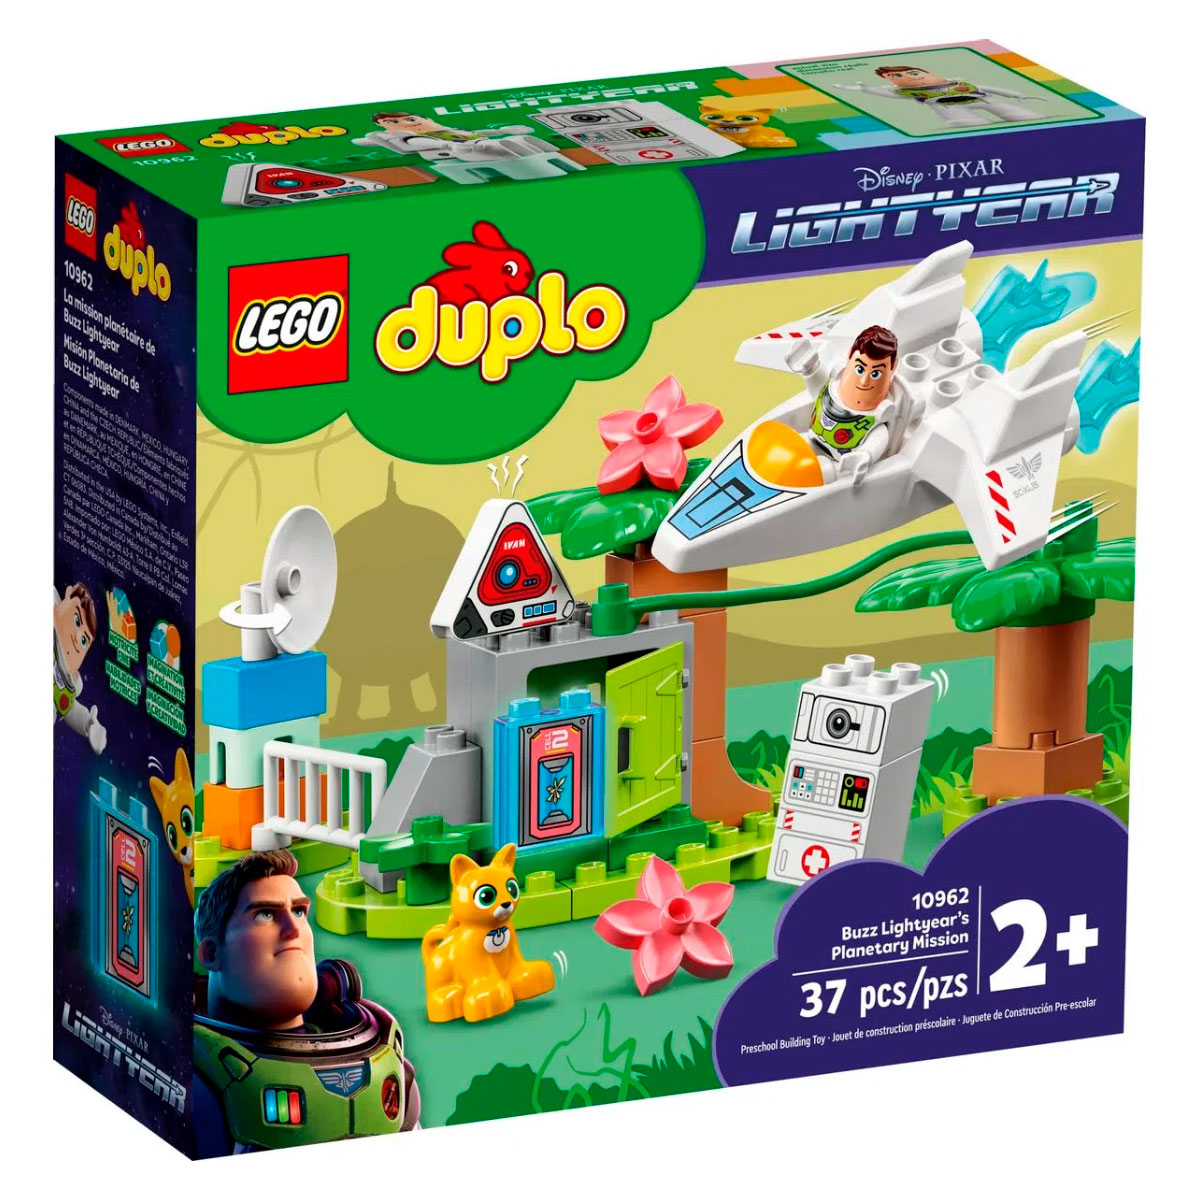 LEGO DUPLO - Missão Planetária de Buzz Lightyear - 10962